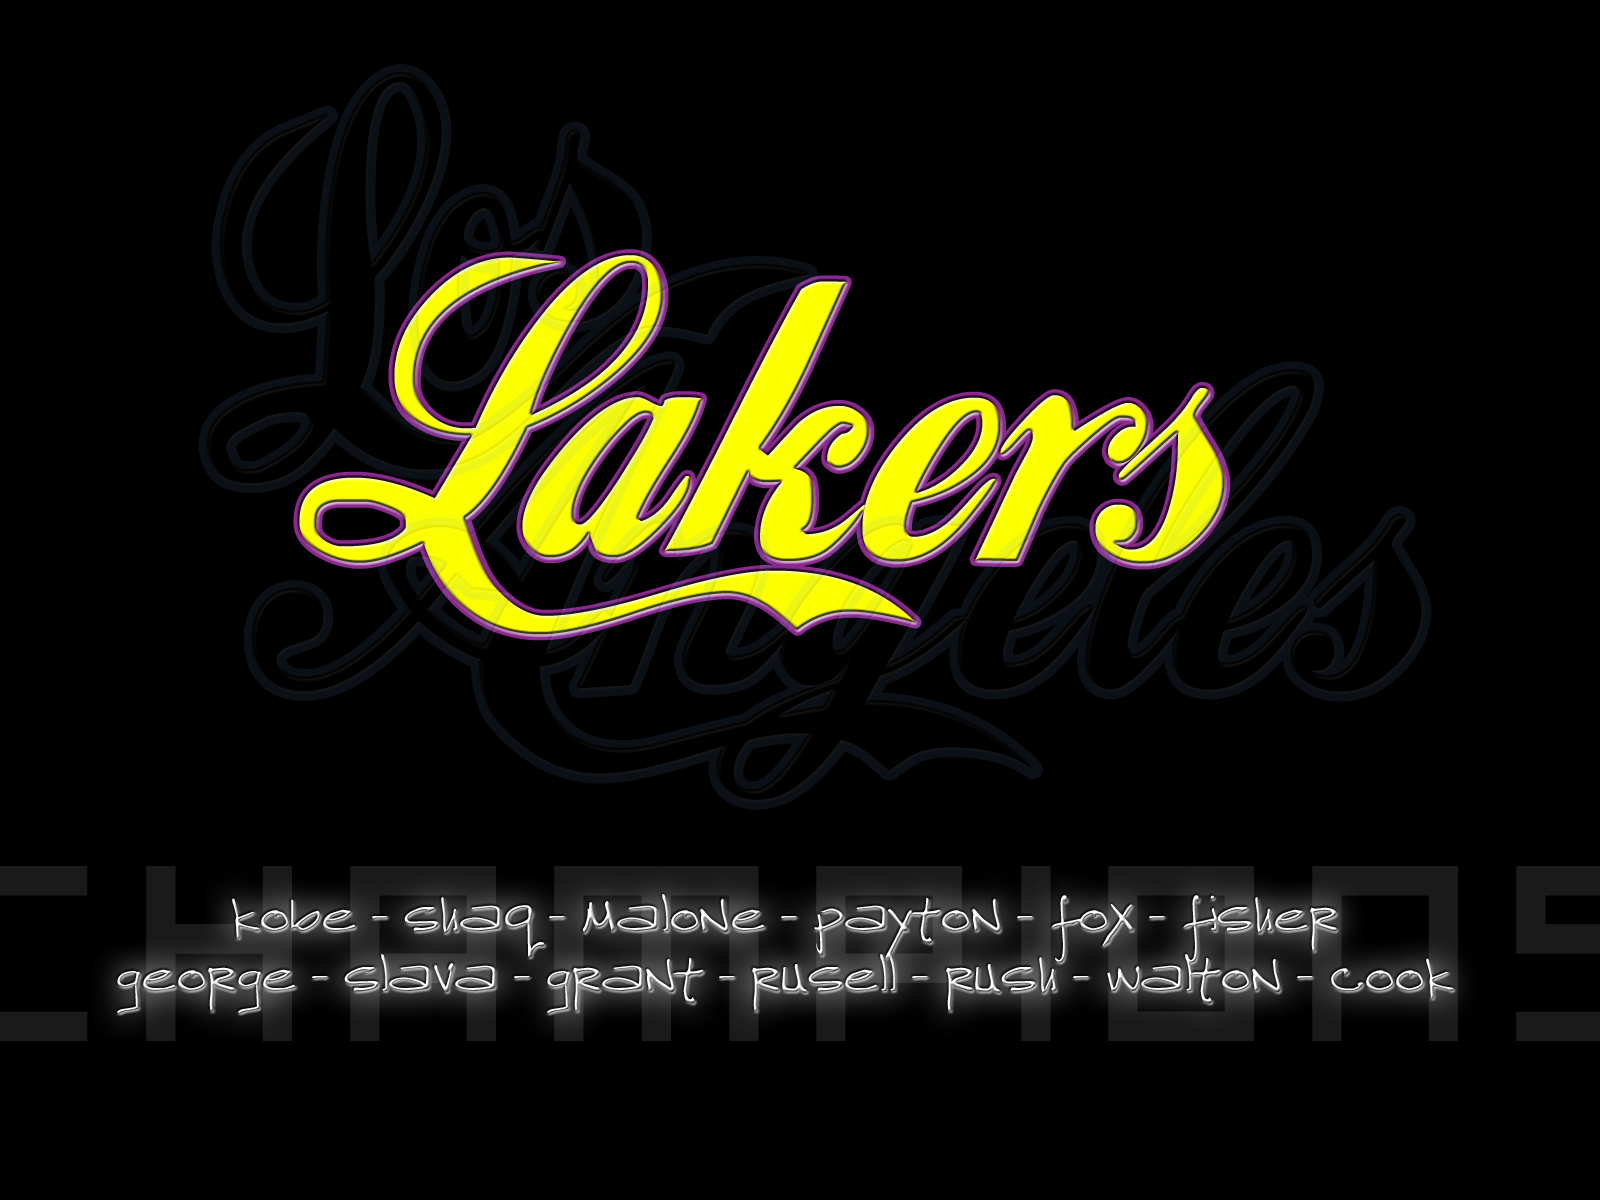 Los Angeles Lakers Players By Nuggetek